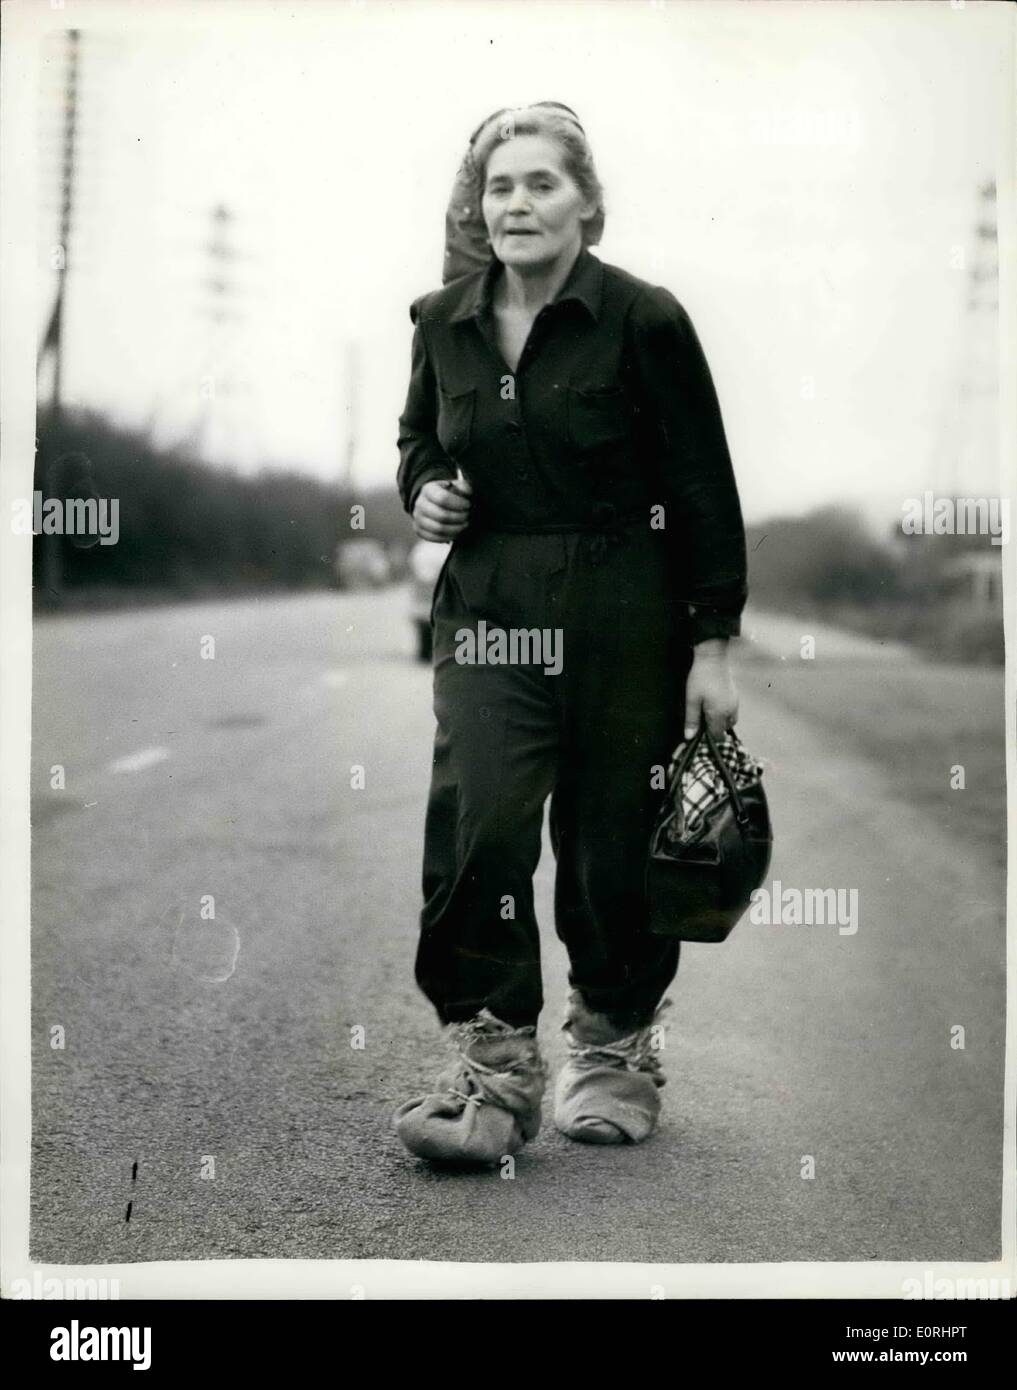 11. November 1959 - Dr. Moore behauptet sie eingerichtet '' Footslogging'' Datensatz.: Fifty - Six Jahre alte Dr. Barbara Moore des Frimley, Surrey - sie hat einen neuen 110 Meile März Rekord - schickte sie '' footslogged'' von Birmingham nach London in 27 1/2 Stunden - sie behauptete, sie mehr als 38 Meilen lief gestern behauptete. Sie ist die russische geborene Ehefrau von Bildhauer Harry Moore - und auf ihrer Reise trug sie ihr Haustier Schildkröte '' Fangio''. Beamte sind verwirrt, wie sie die letzten 18 Meilen bedeckt, ohne gesehen zu haben wurde durch Patrouillen ausgeschickt, um sie zu treffen. Foto zeigt mit ihren Füßen eingewickelt in Sackleinen - Dr Stockfoto